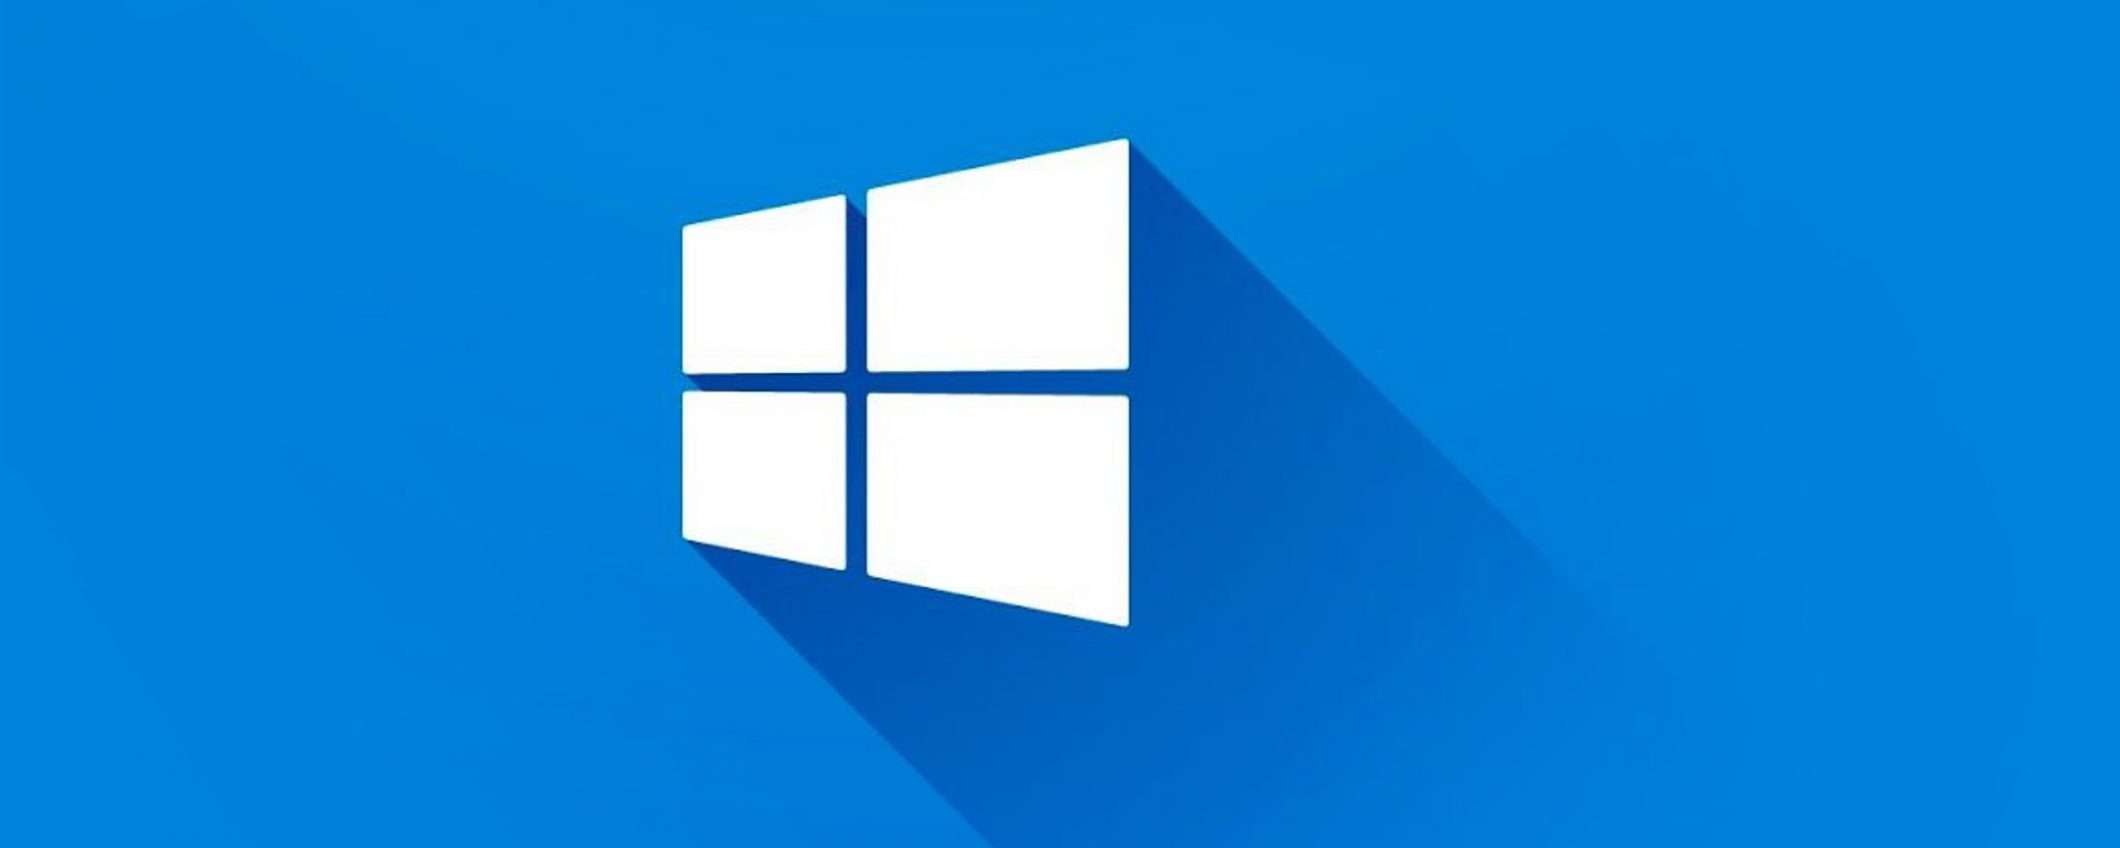 Windows 10, licenza a vita a 10€, super sconti fino al 91%